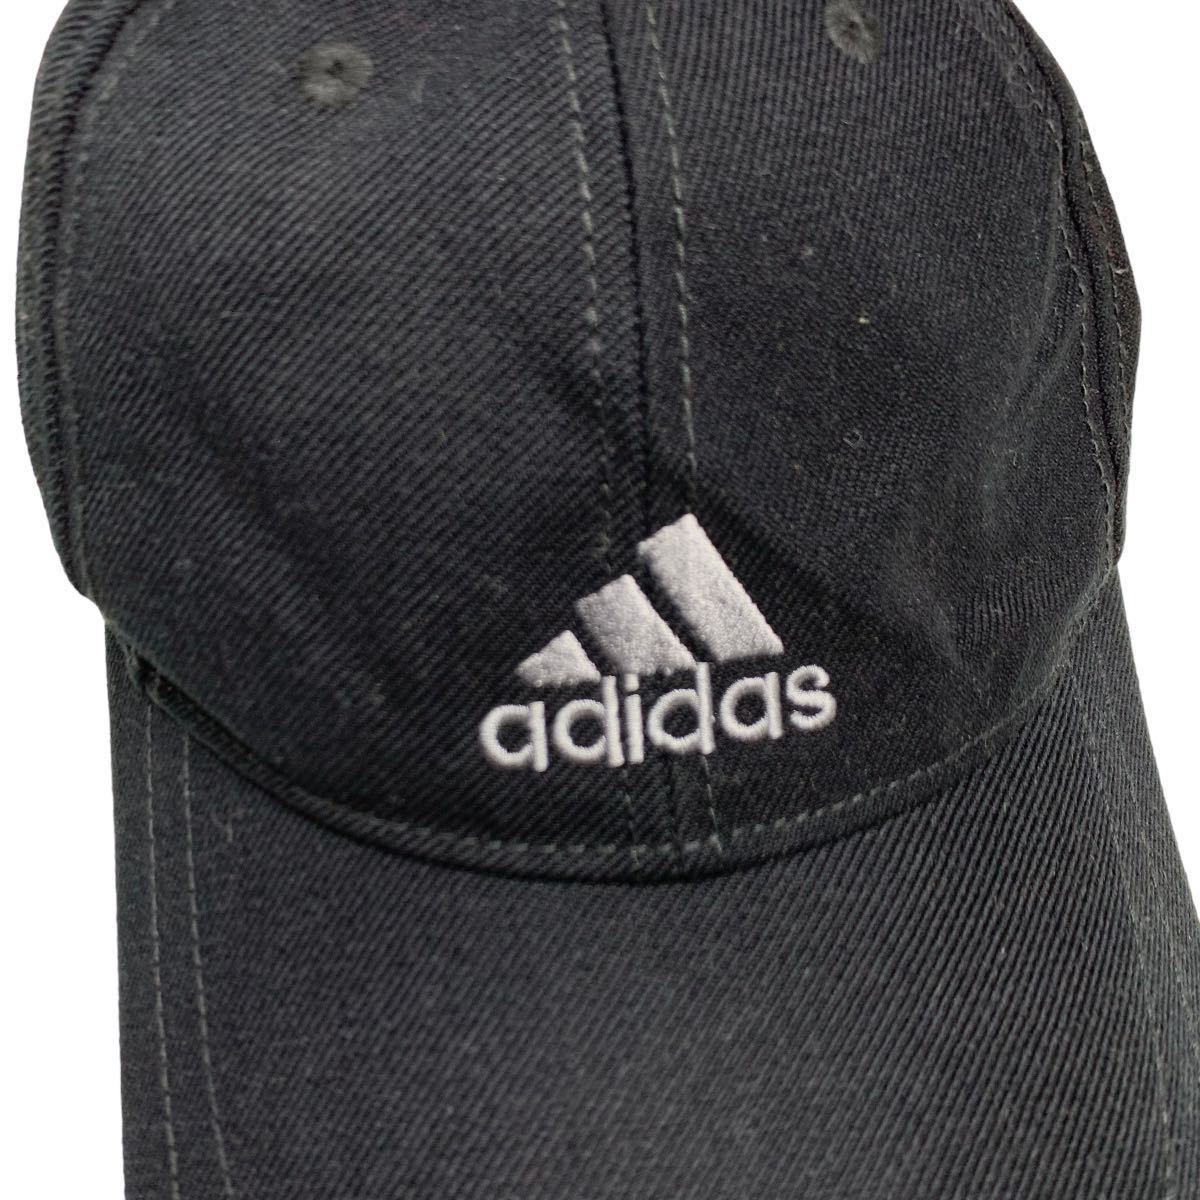 adidas アディダス キャップ ベースボールキャップ CAP 帽子 ブラック ロゴ刺繍 6パネル アジャスター有り ゴルフ スポーツ_画像7